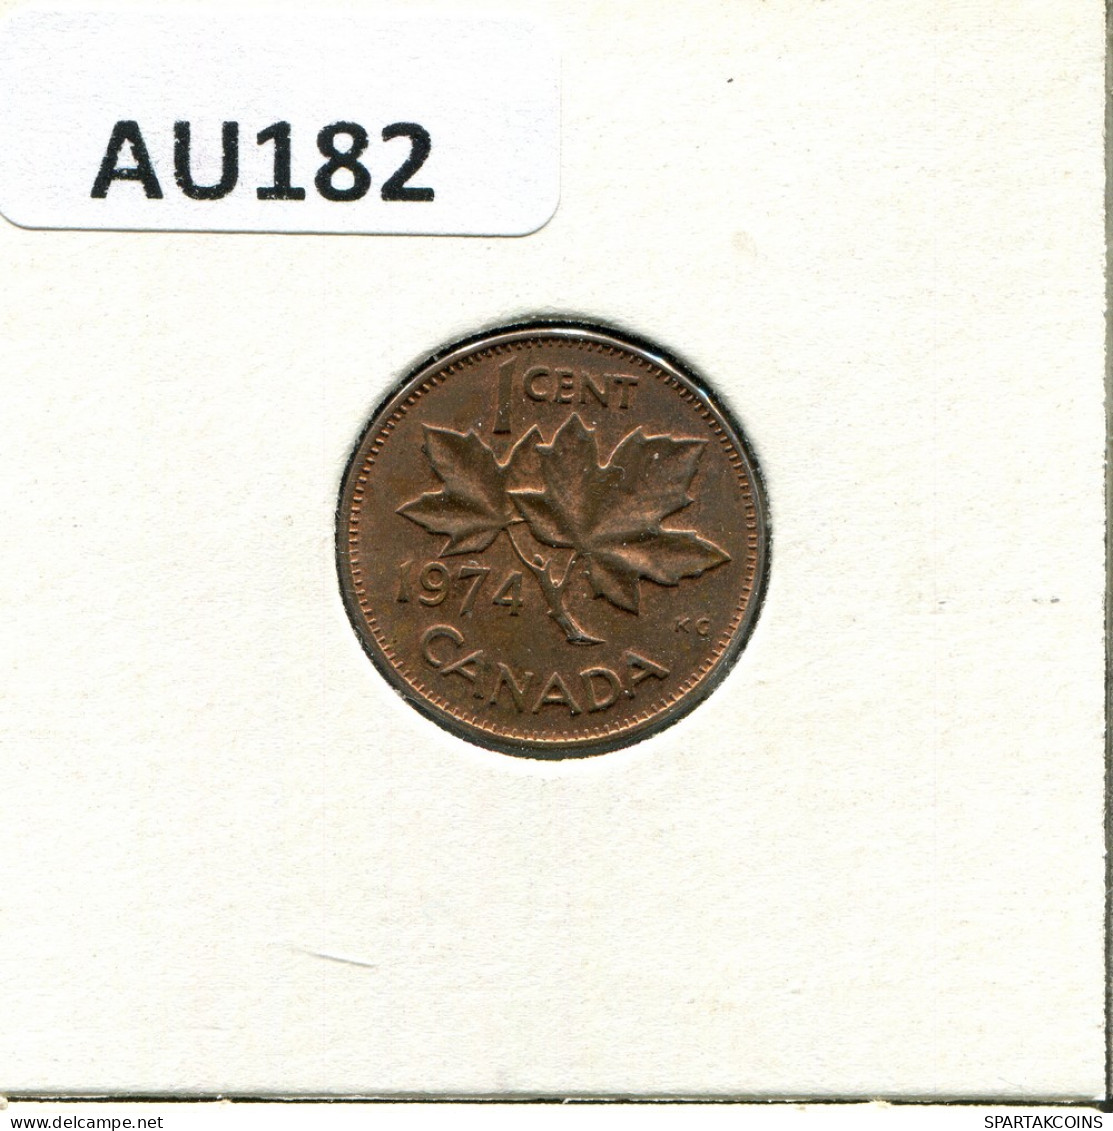 1 CENT 1974 CANADA Coin #AU182.U - Canada